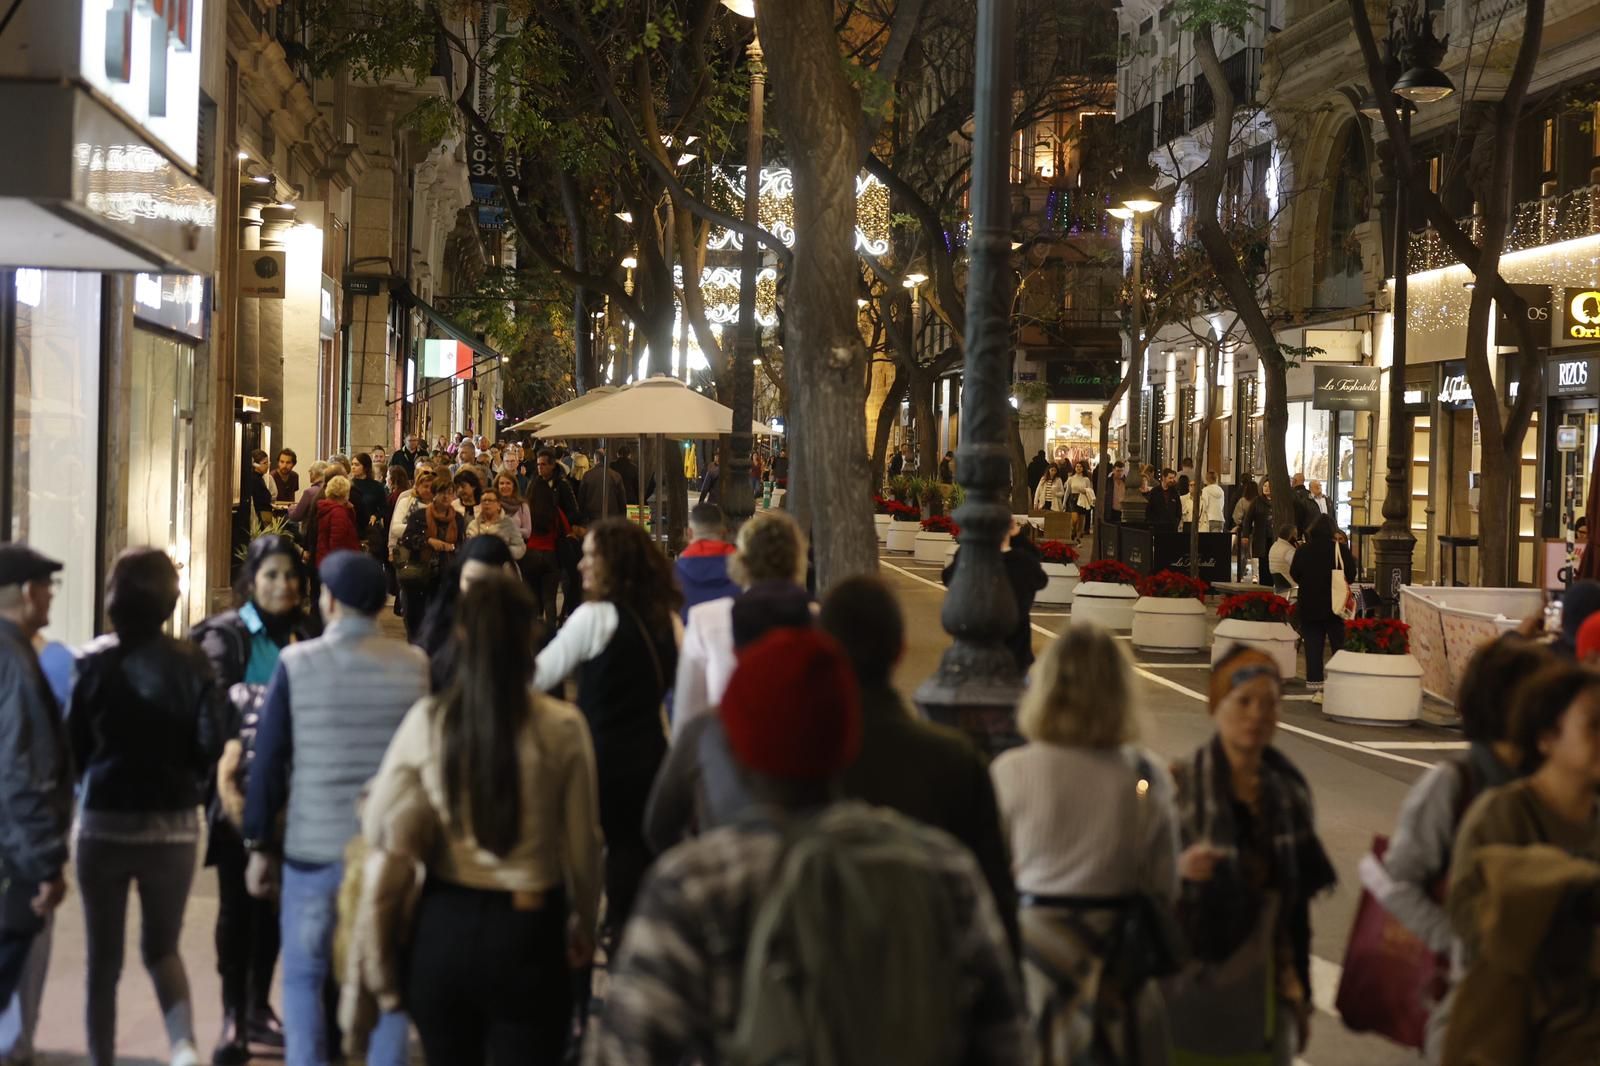 El centro de València a rebosar de gente a las puertas de las fiestas navideñas